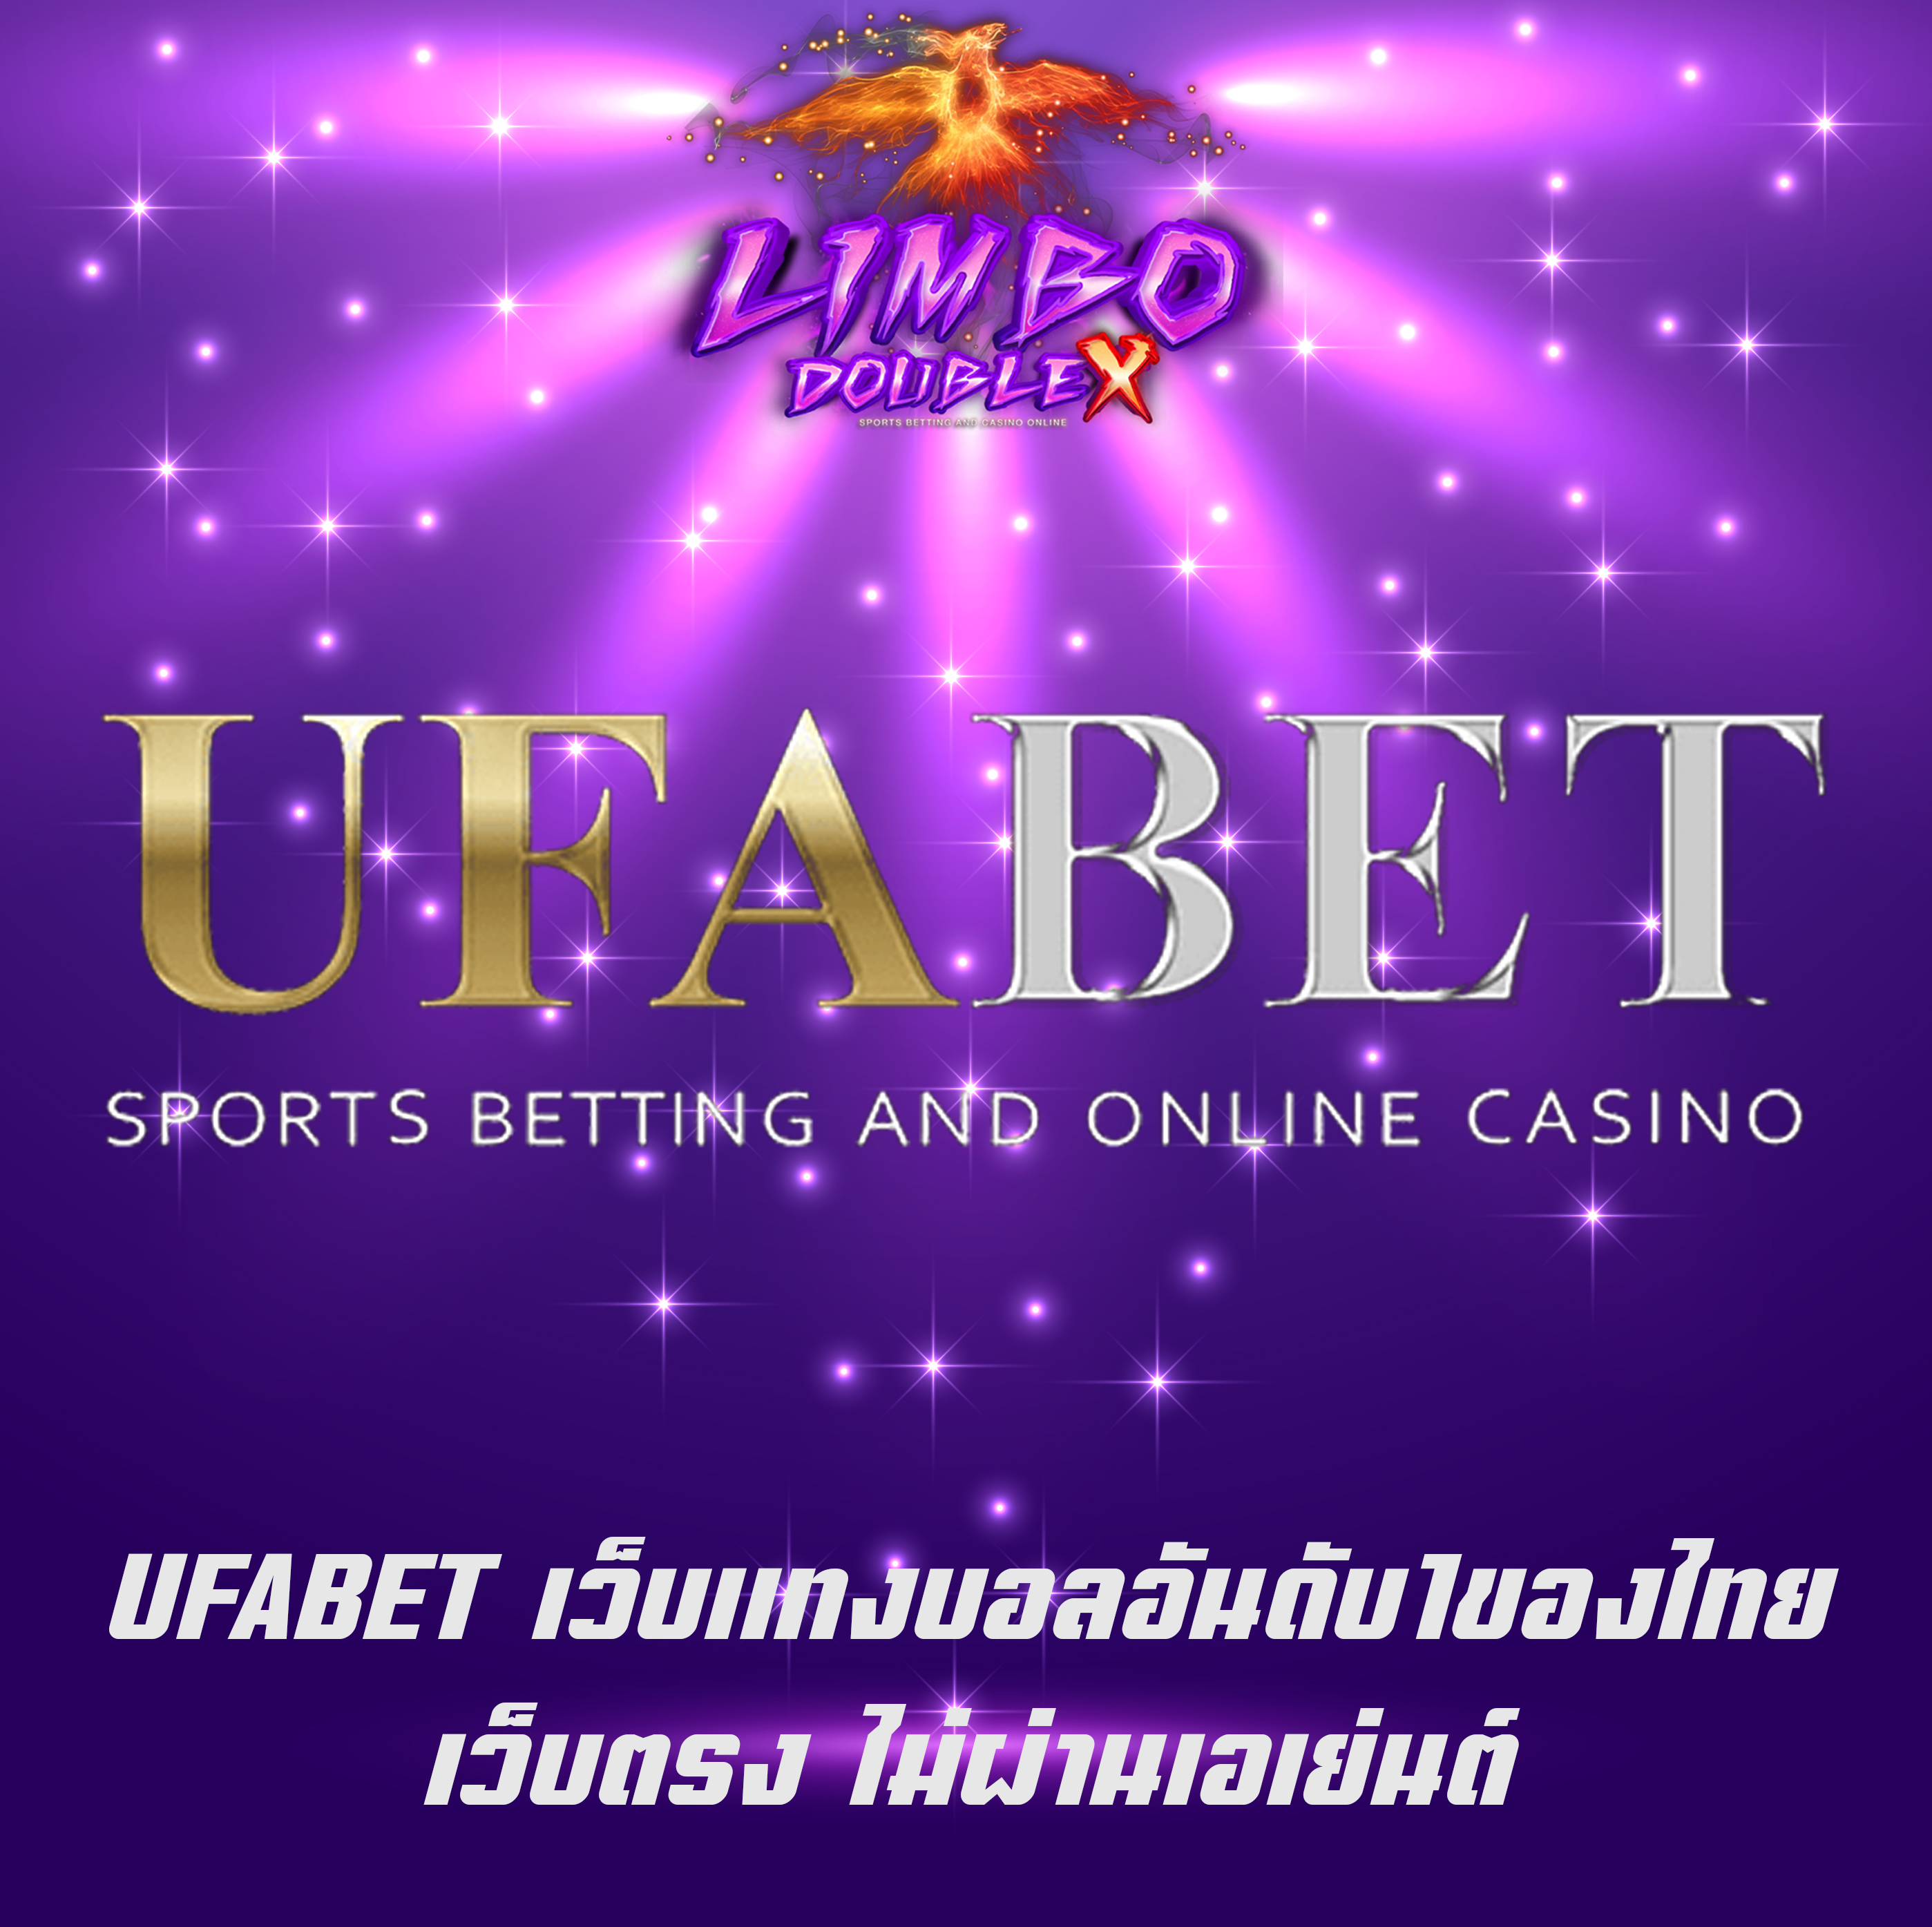 UFABET เว็บแทงบอลอันดับ1ของไทย เว็บตรง ไม่ผ่านเอเย่นต์